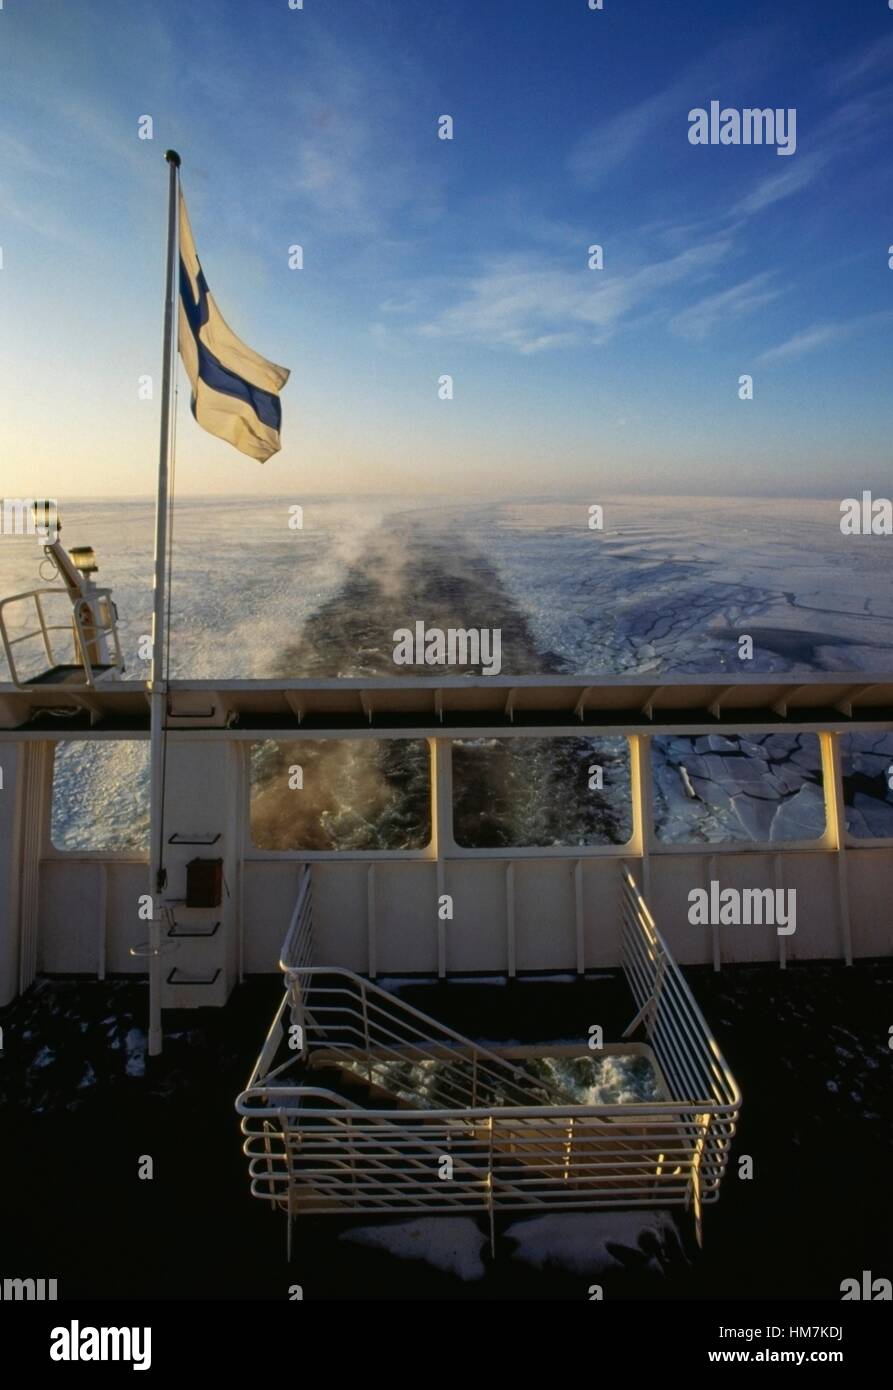 Poupe d'un bateau dans la mer Baltique gelée, en Finlande. Banque D'Images